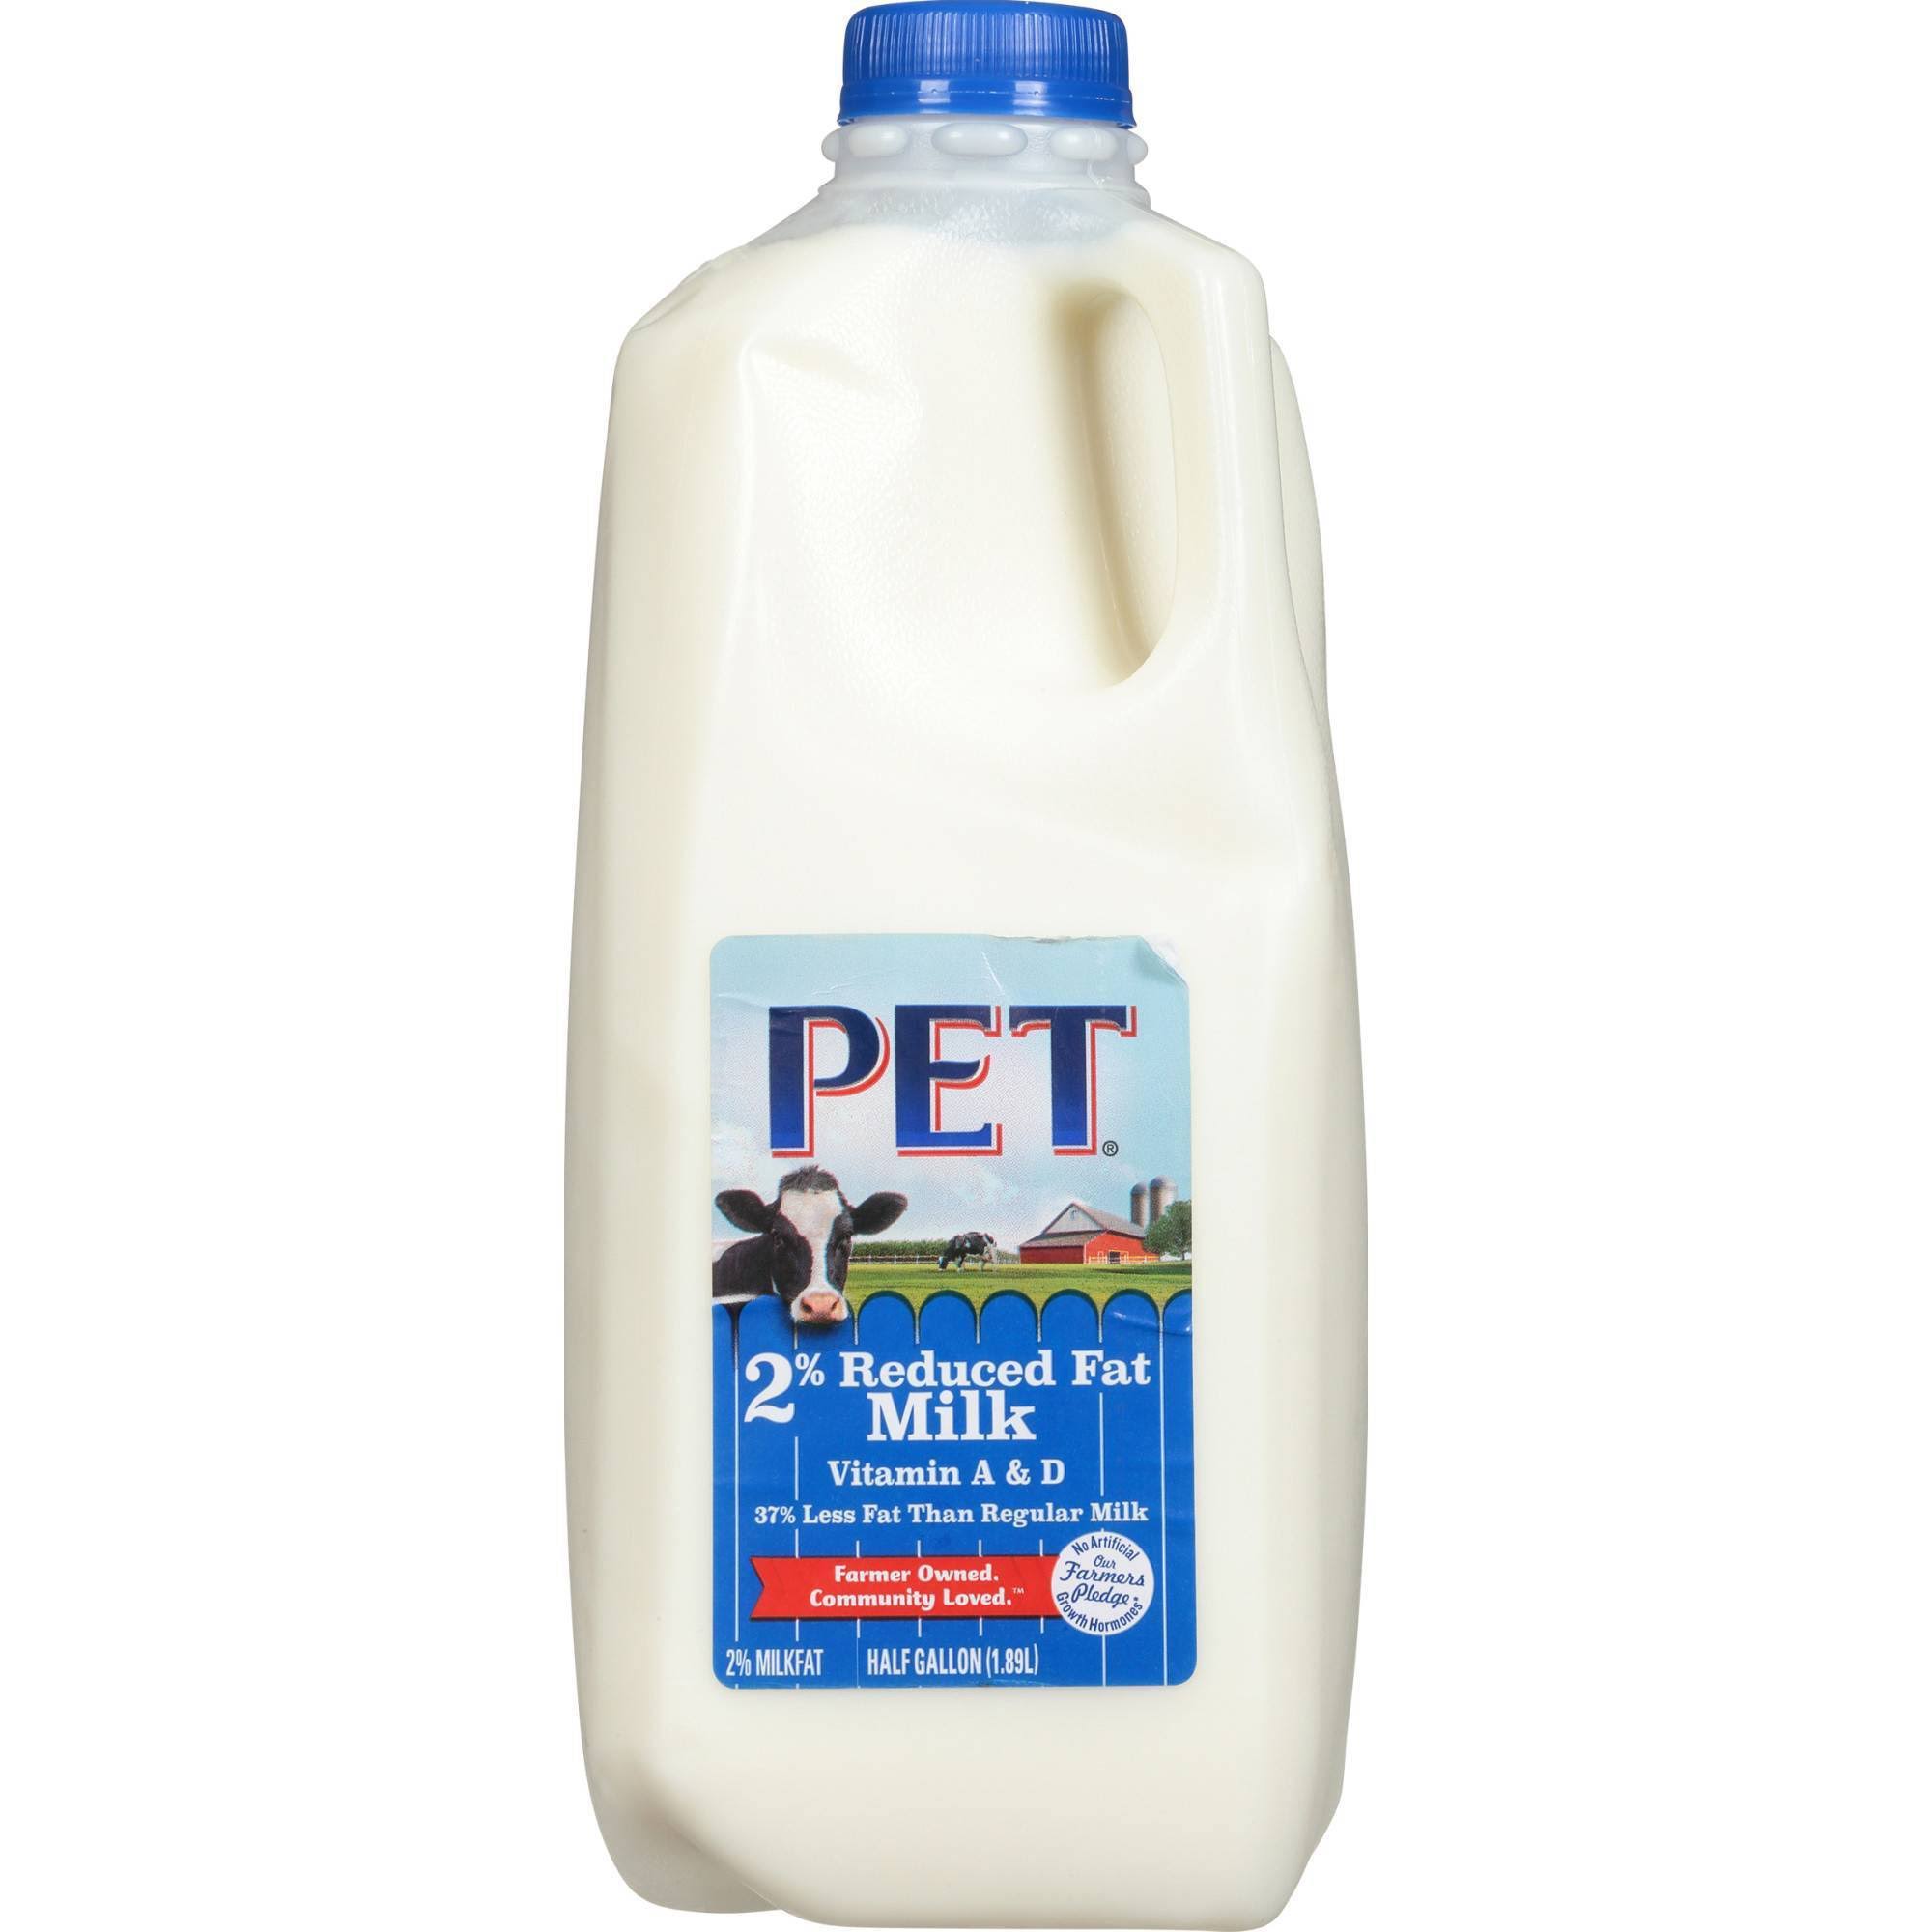 Pet Milk, 2% Reduced Fat - half gallon (1.89 l)